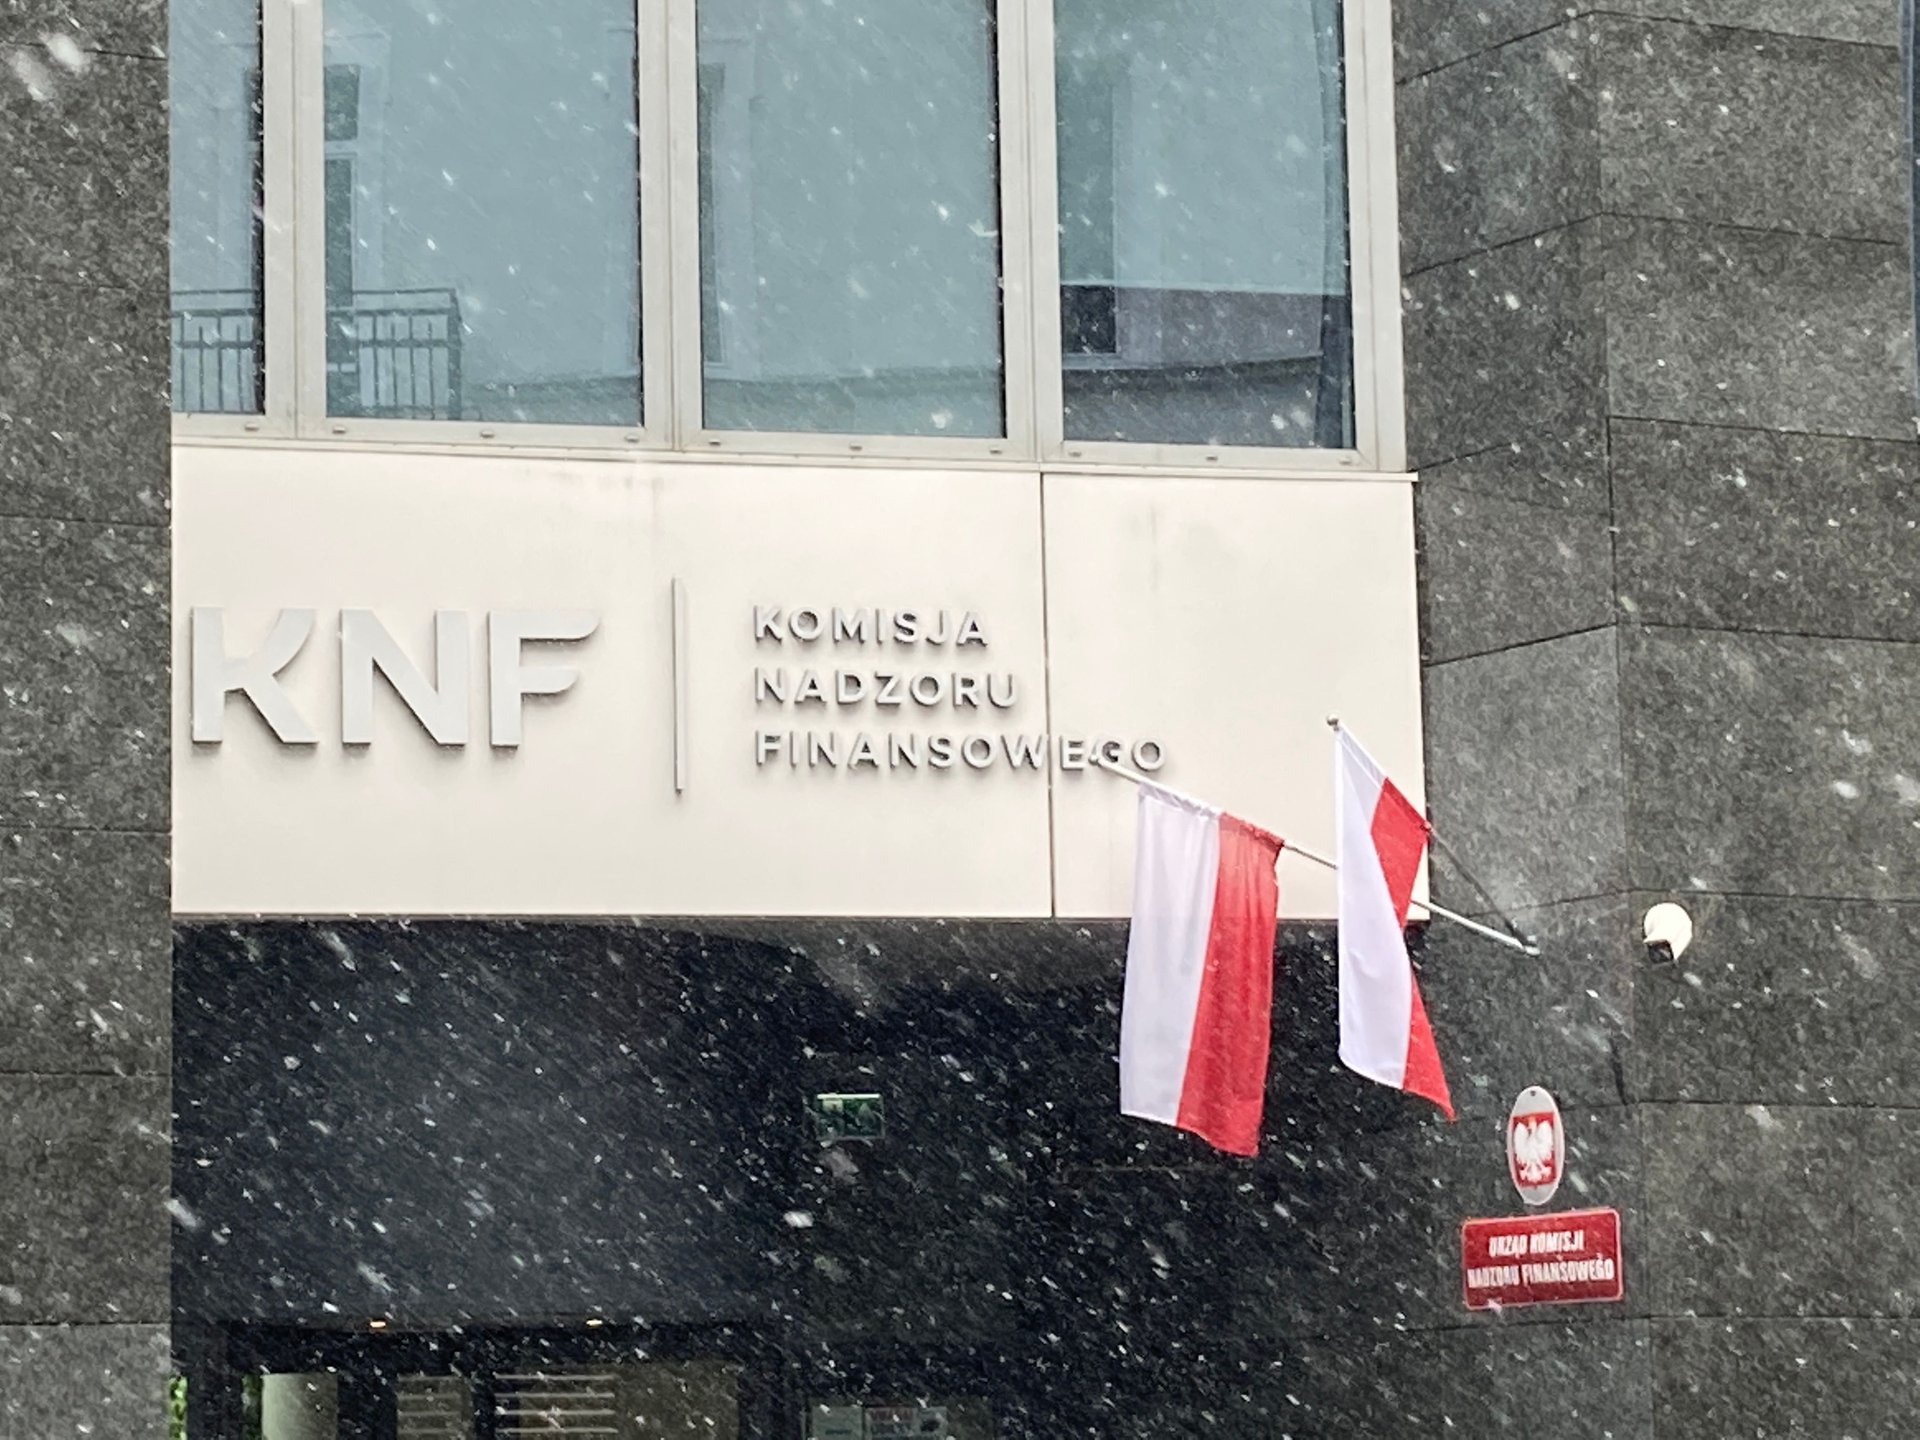 KNF-siedziba KNF-komisja nadzoru finansowego-iberion